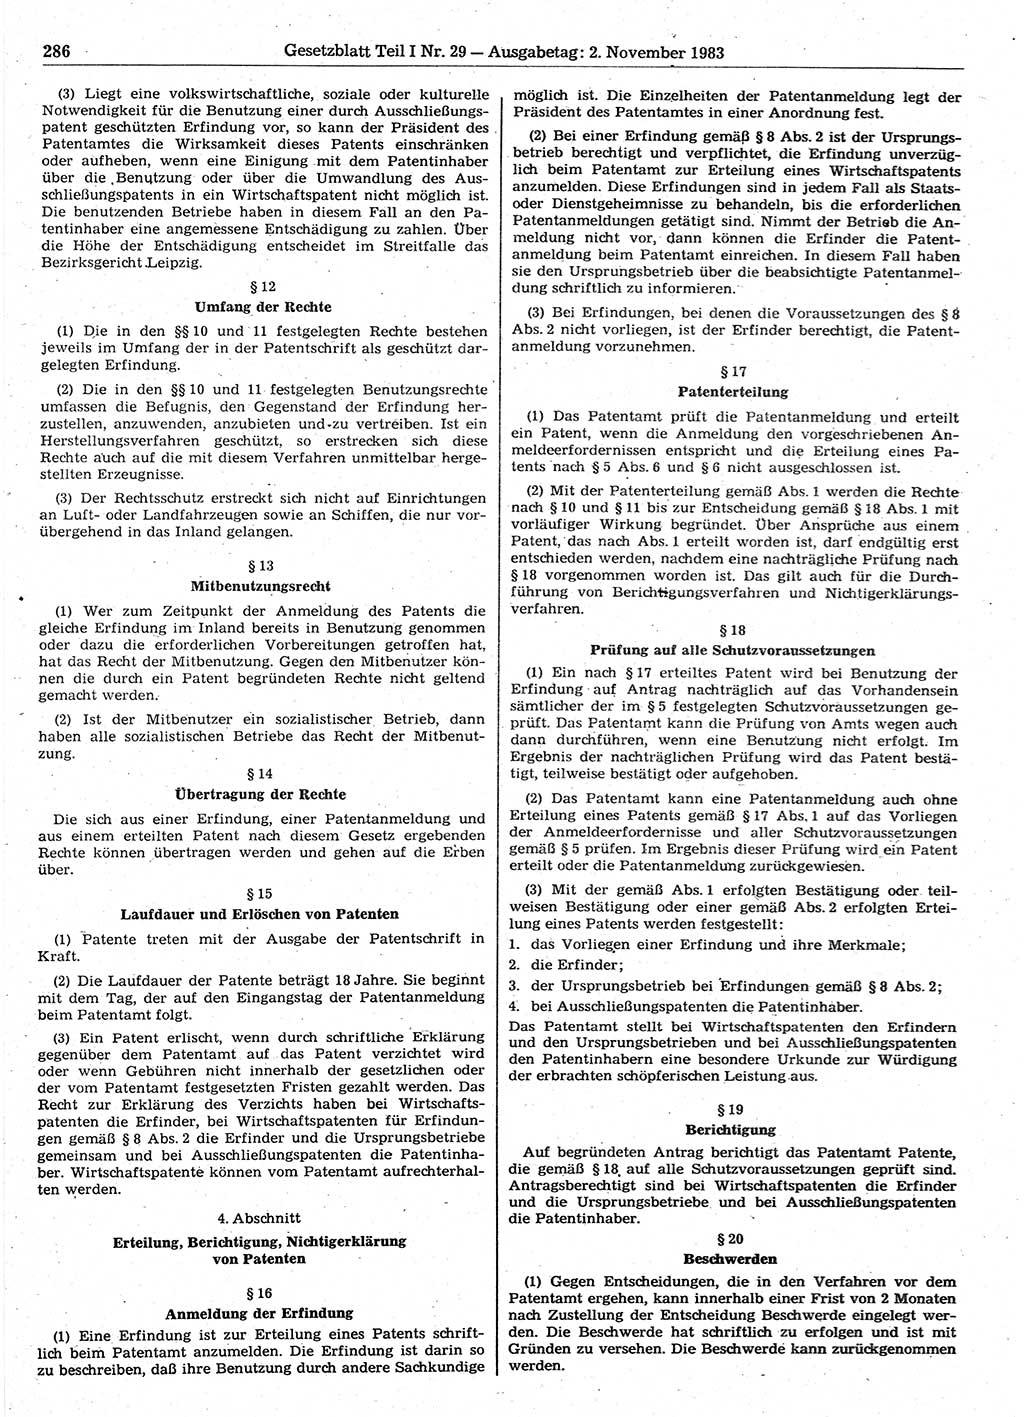 Gesetzblatt (GBl.) der Deutschen Demokratischen Republik (DDR) Teil Ⅰ 1983, Seite 286 (GBl. DDR Ⅰ 1983, S. 286)